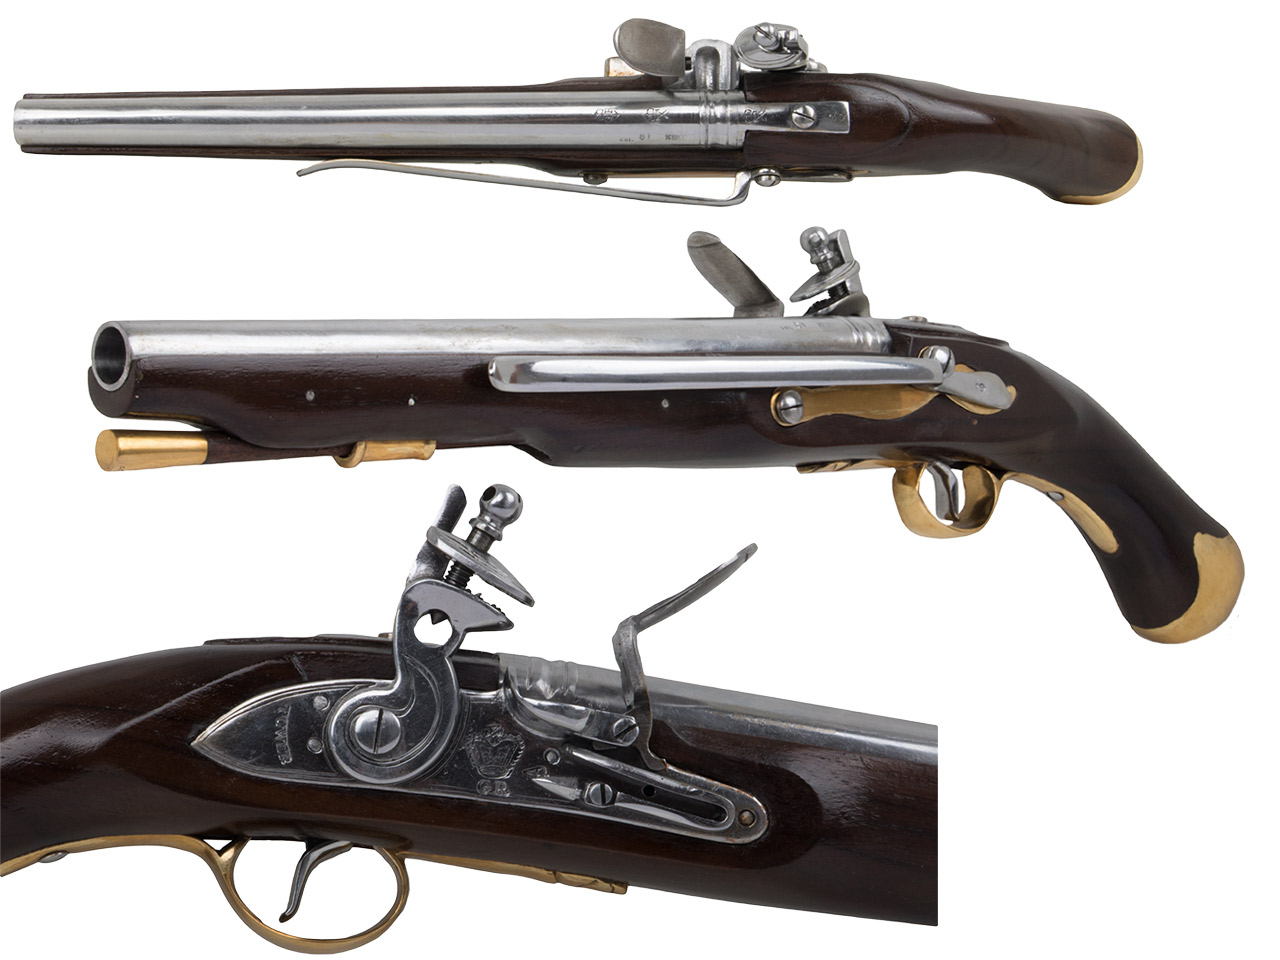 Vorderlader Steinschlosspistole British Royal Navy Sea Service Pistol Pattern 1756 Kaliber .62 bzw. 15,8 mm (P18)